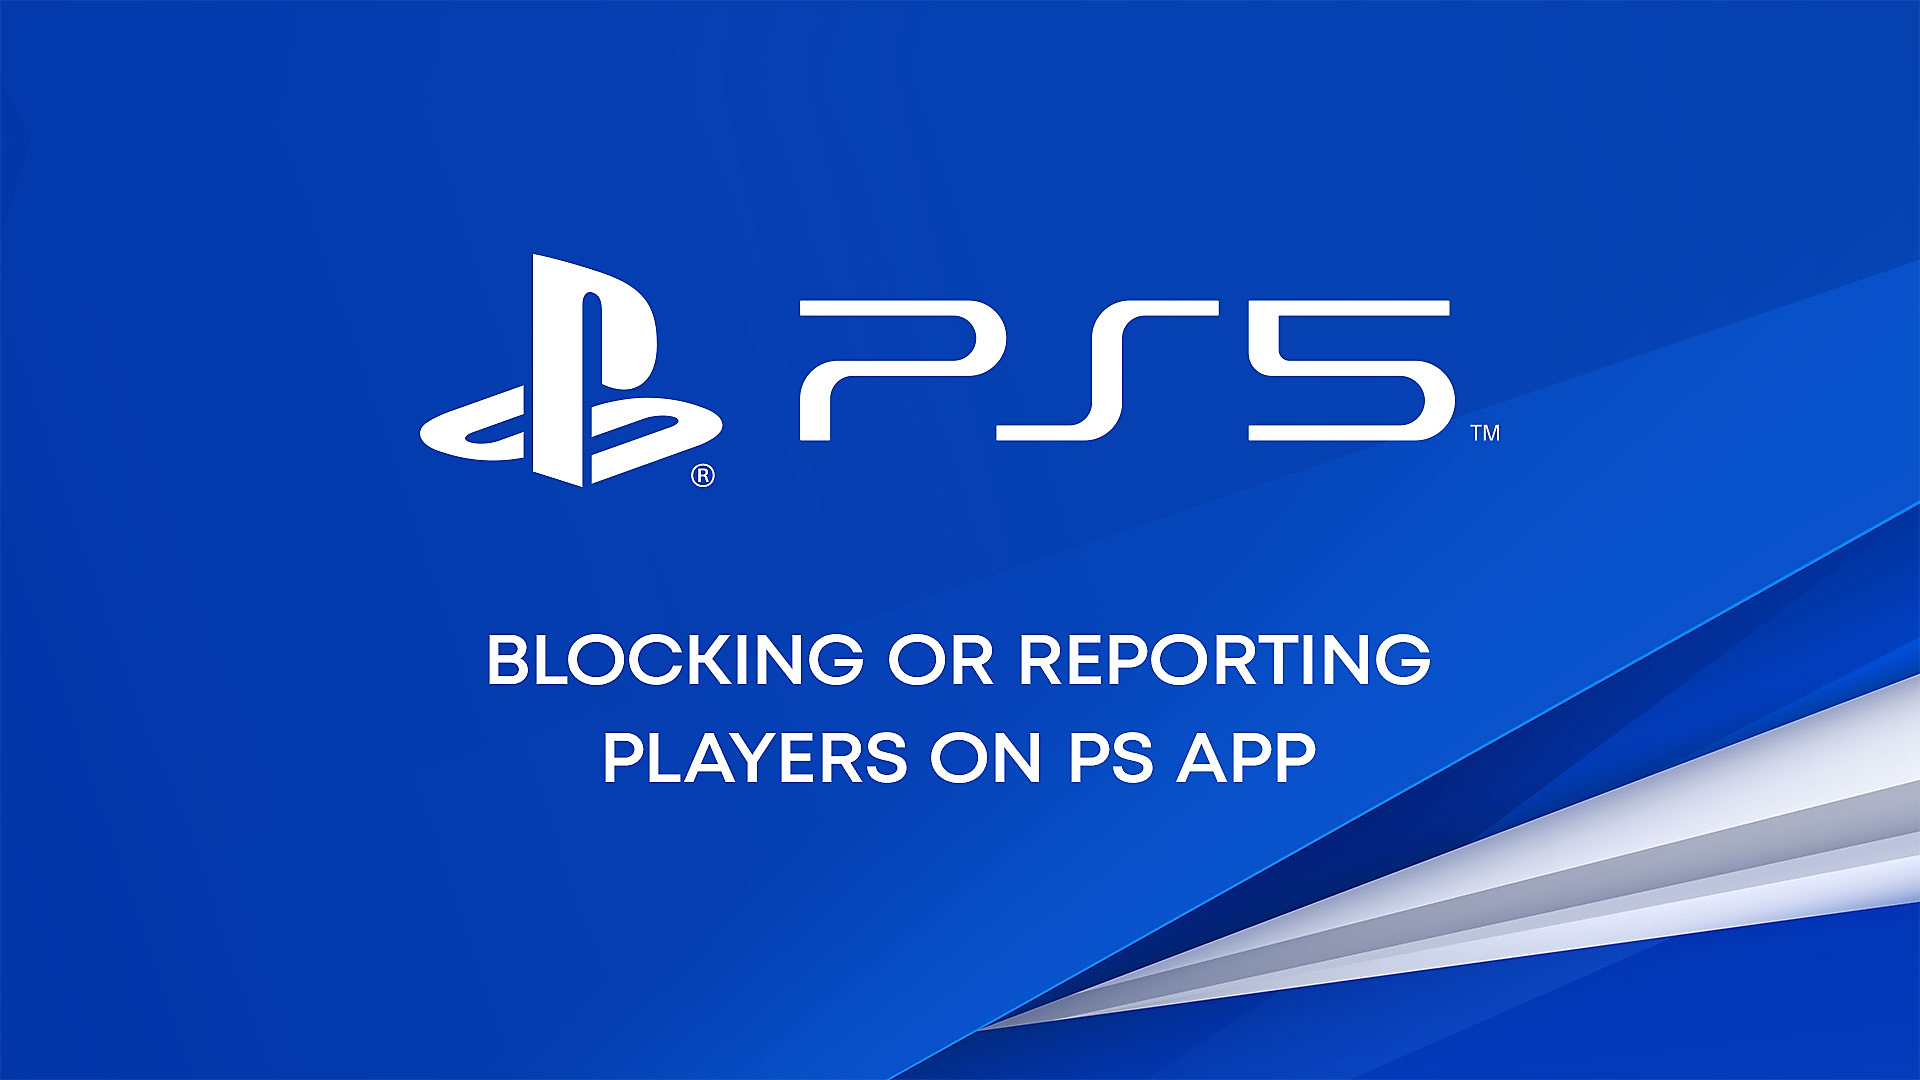 YouTube-video over hoe je spelers kunt blokkeren of melden in de PS App.